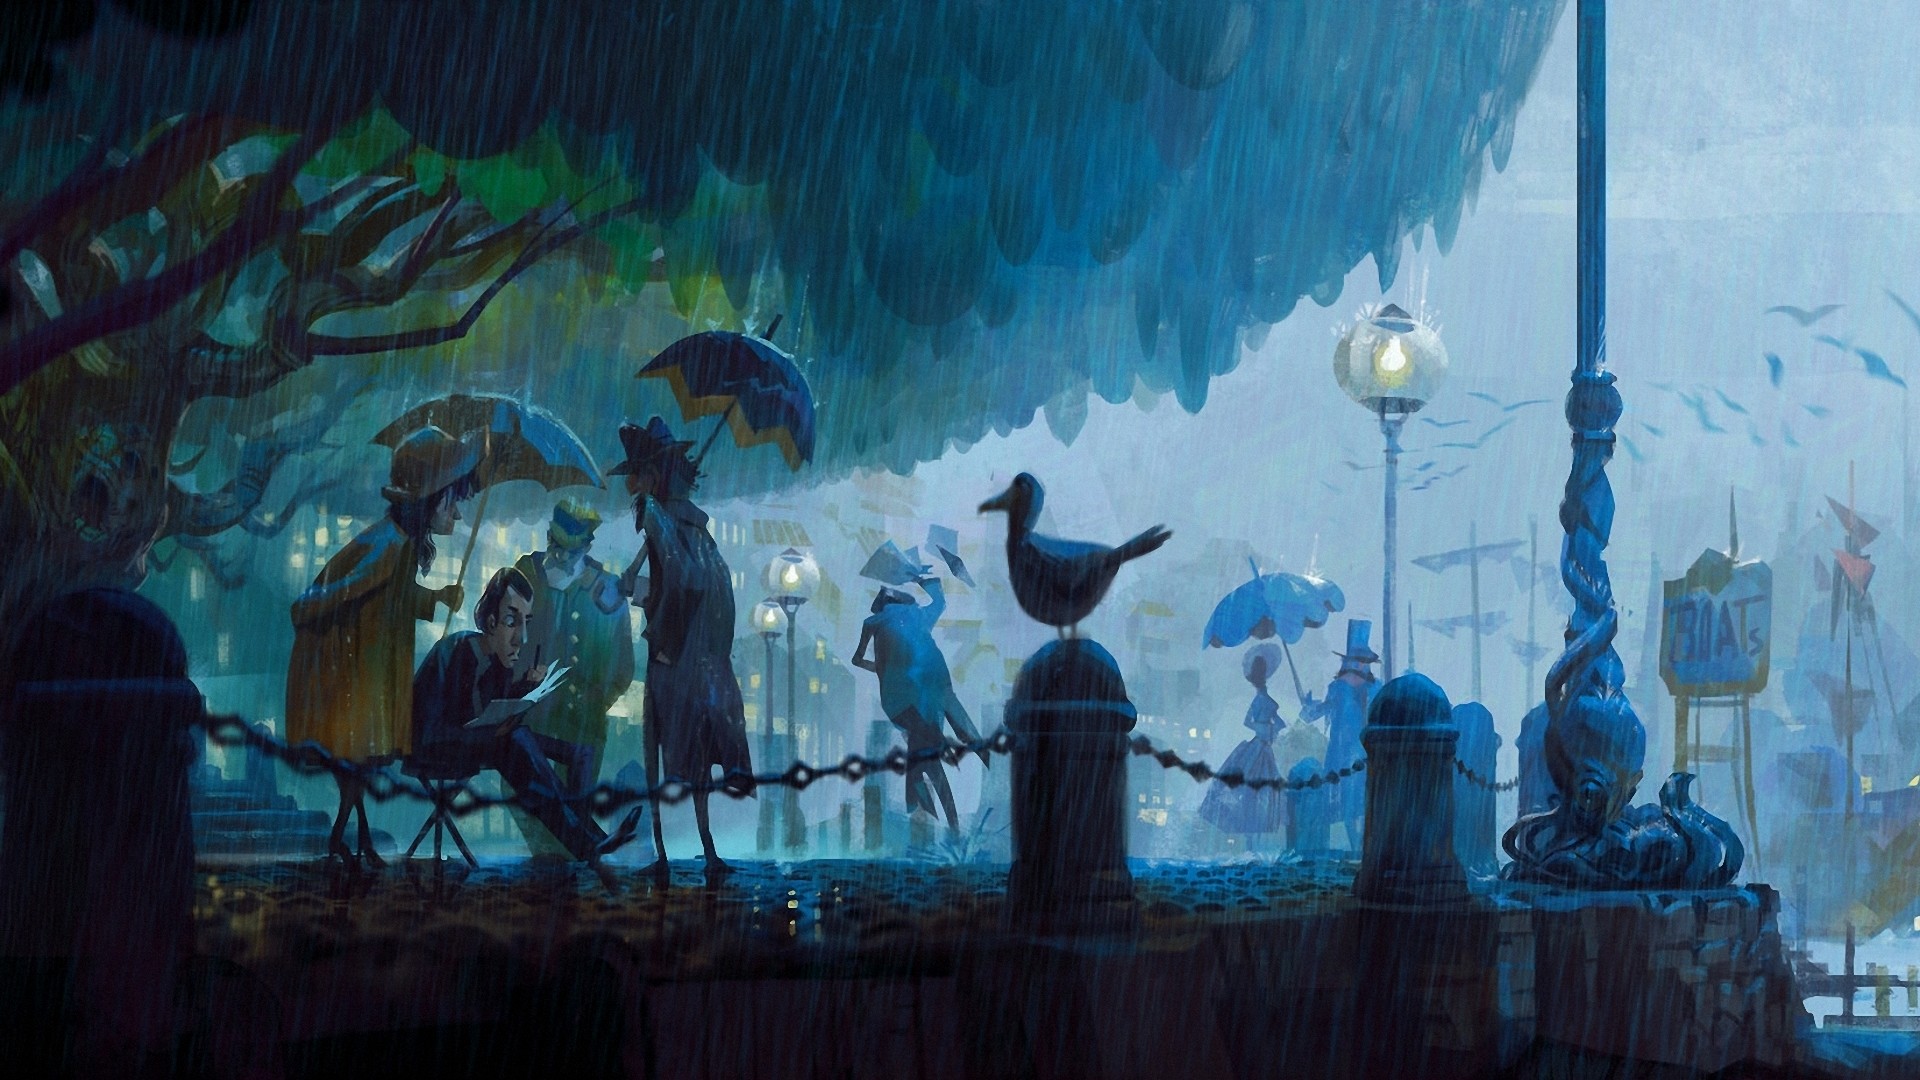 街头绘画 晚上 公园 手电筒 雨 艺术壁纸 其他壁纸 壁纸下载 彼岸桌面